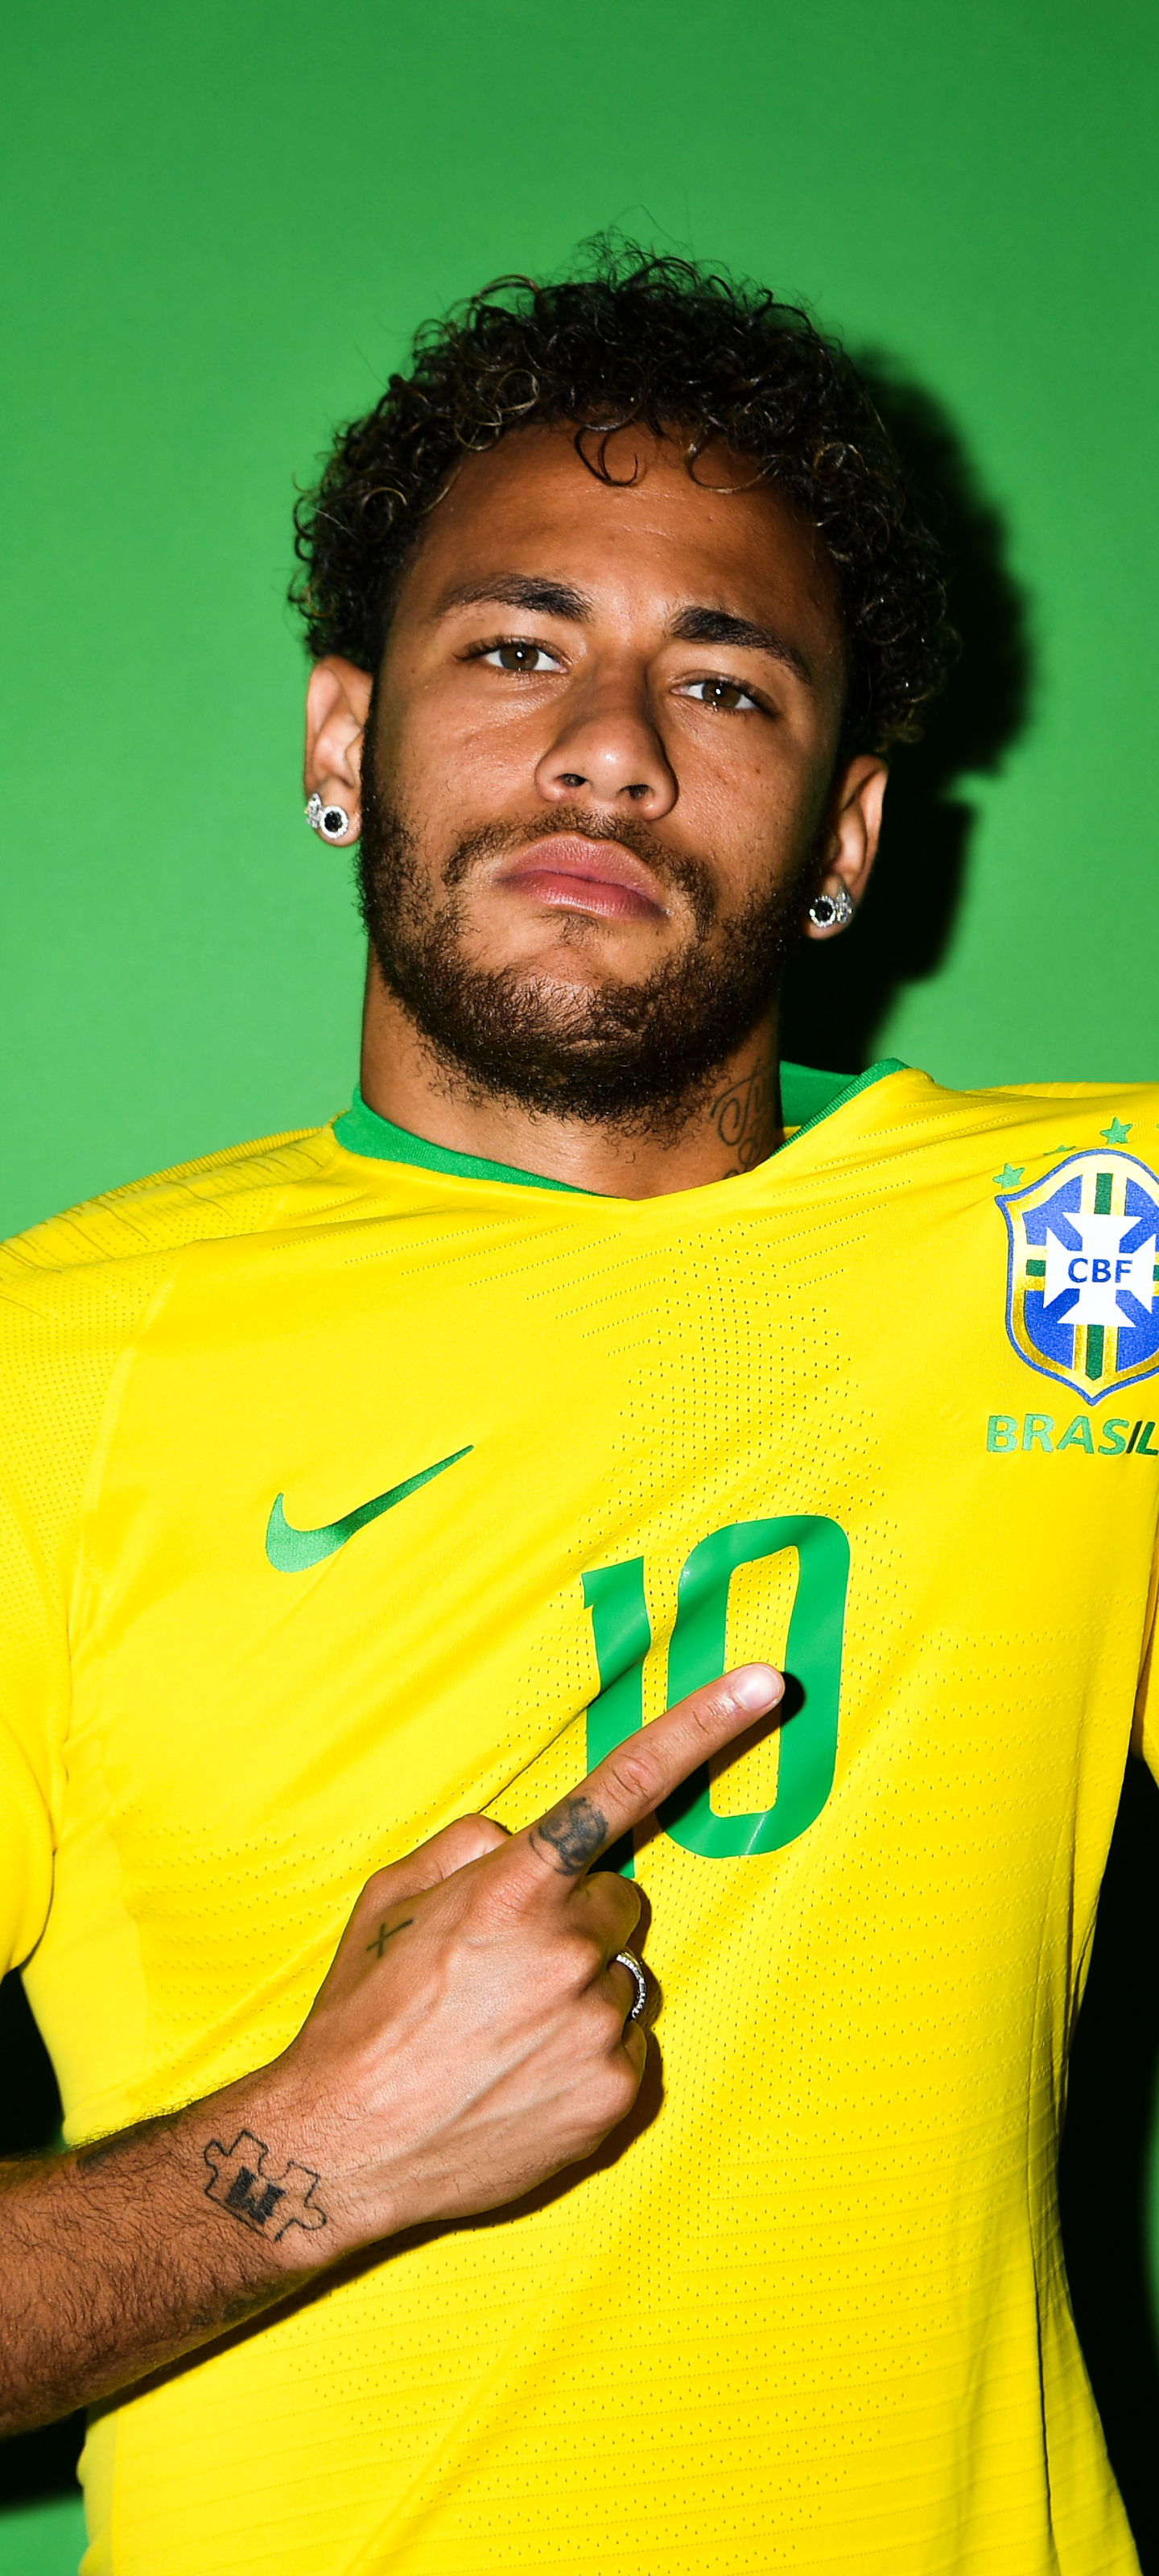 Free download wallpaper Sports, Soccer, Brazilian, Neymar on your PC desktop